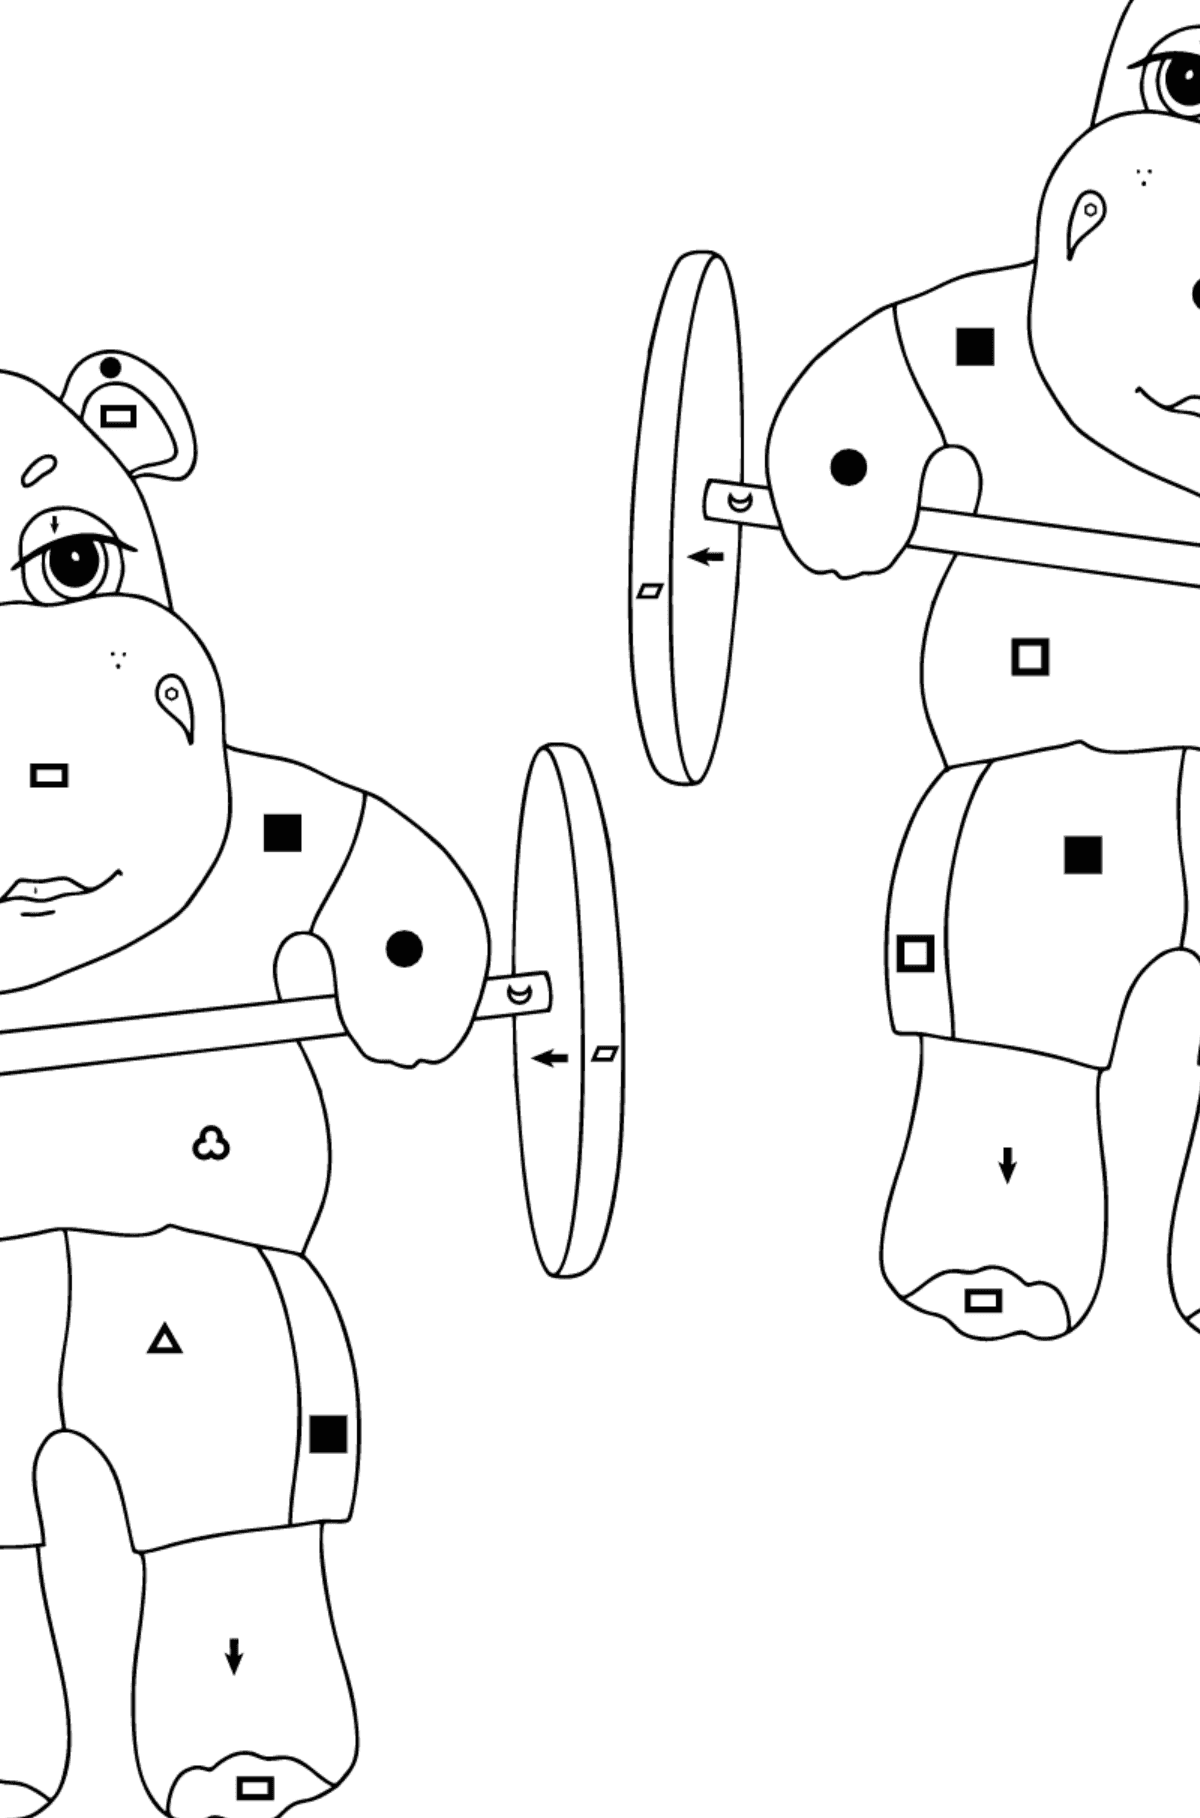 Kolorowanka Sportowy hipopotam (trudny) - Kolorowanie według symboli i figur geometrycznych dla dzieci